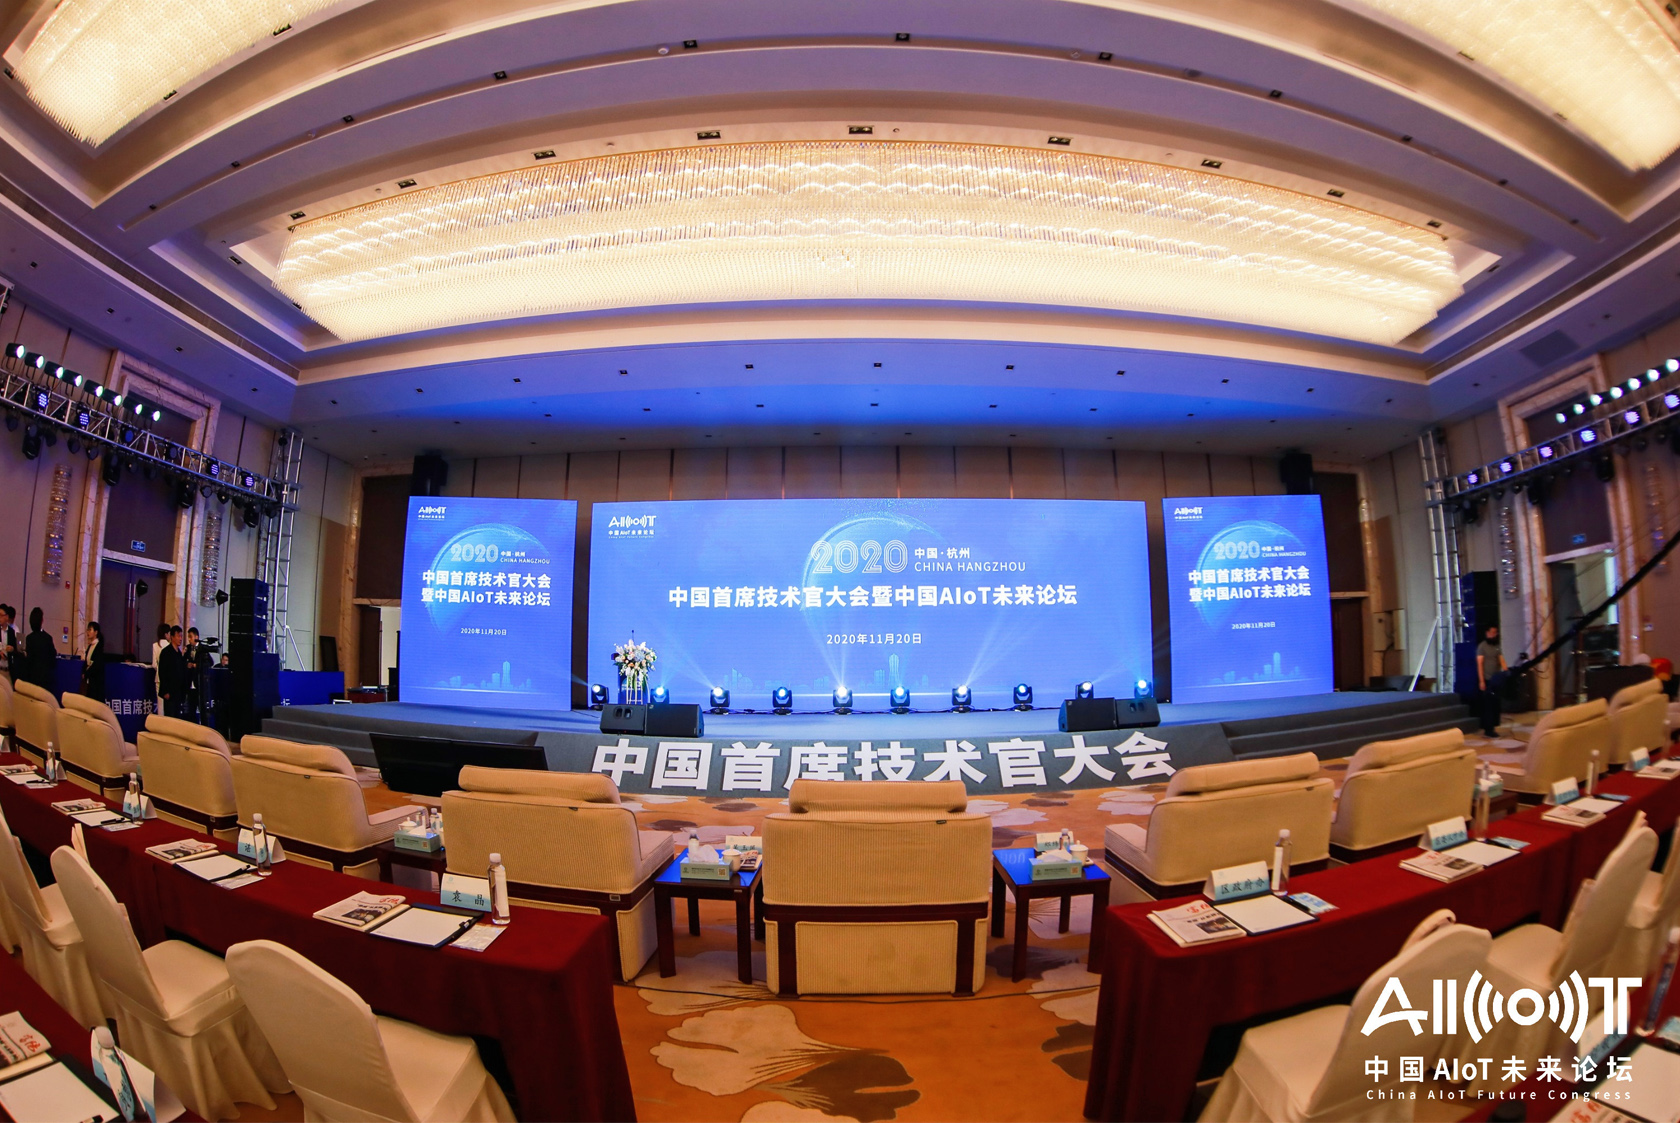 2020中国首席技术官大会暨中国AIoT未来论坛 智能科技企业展览-6